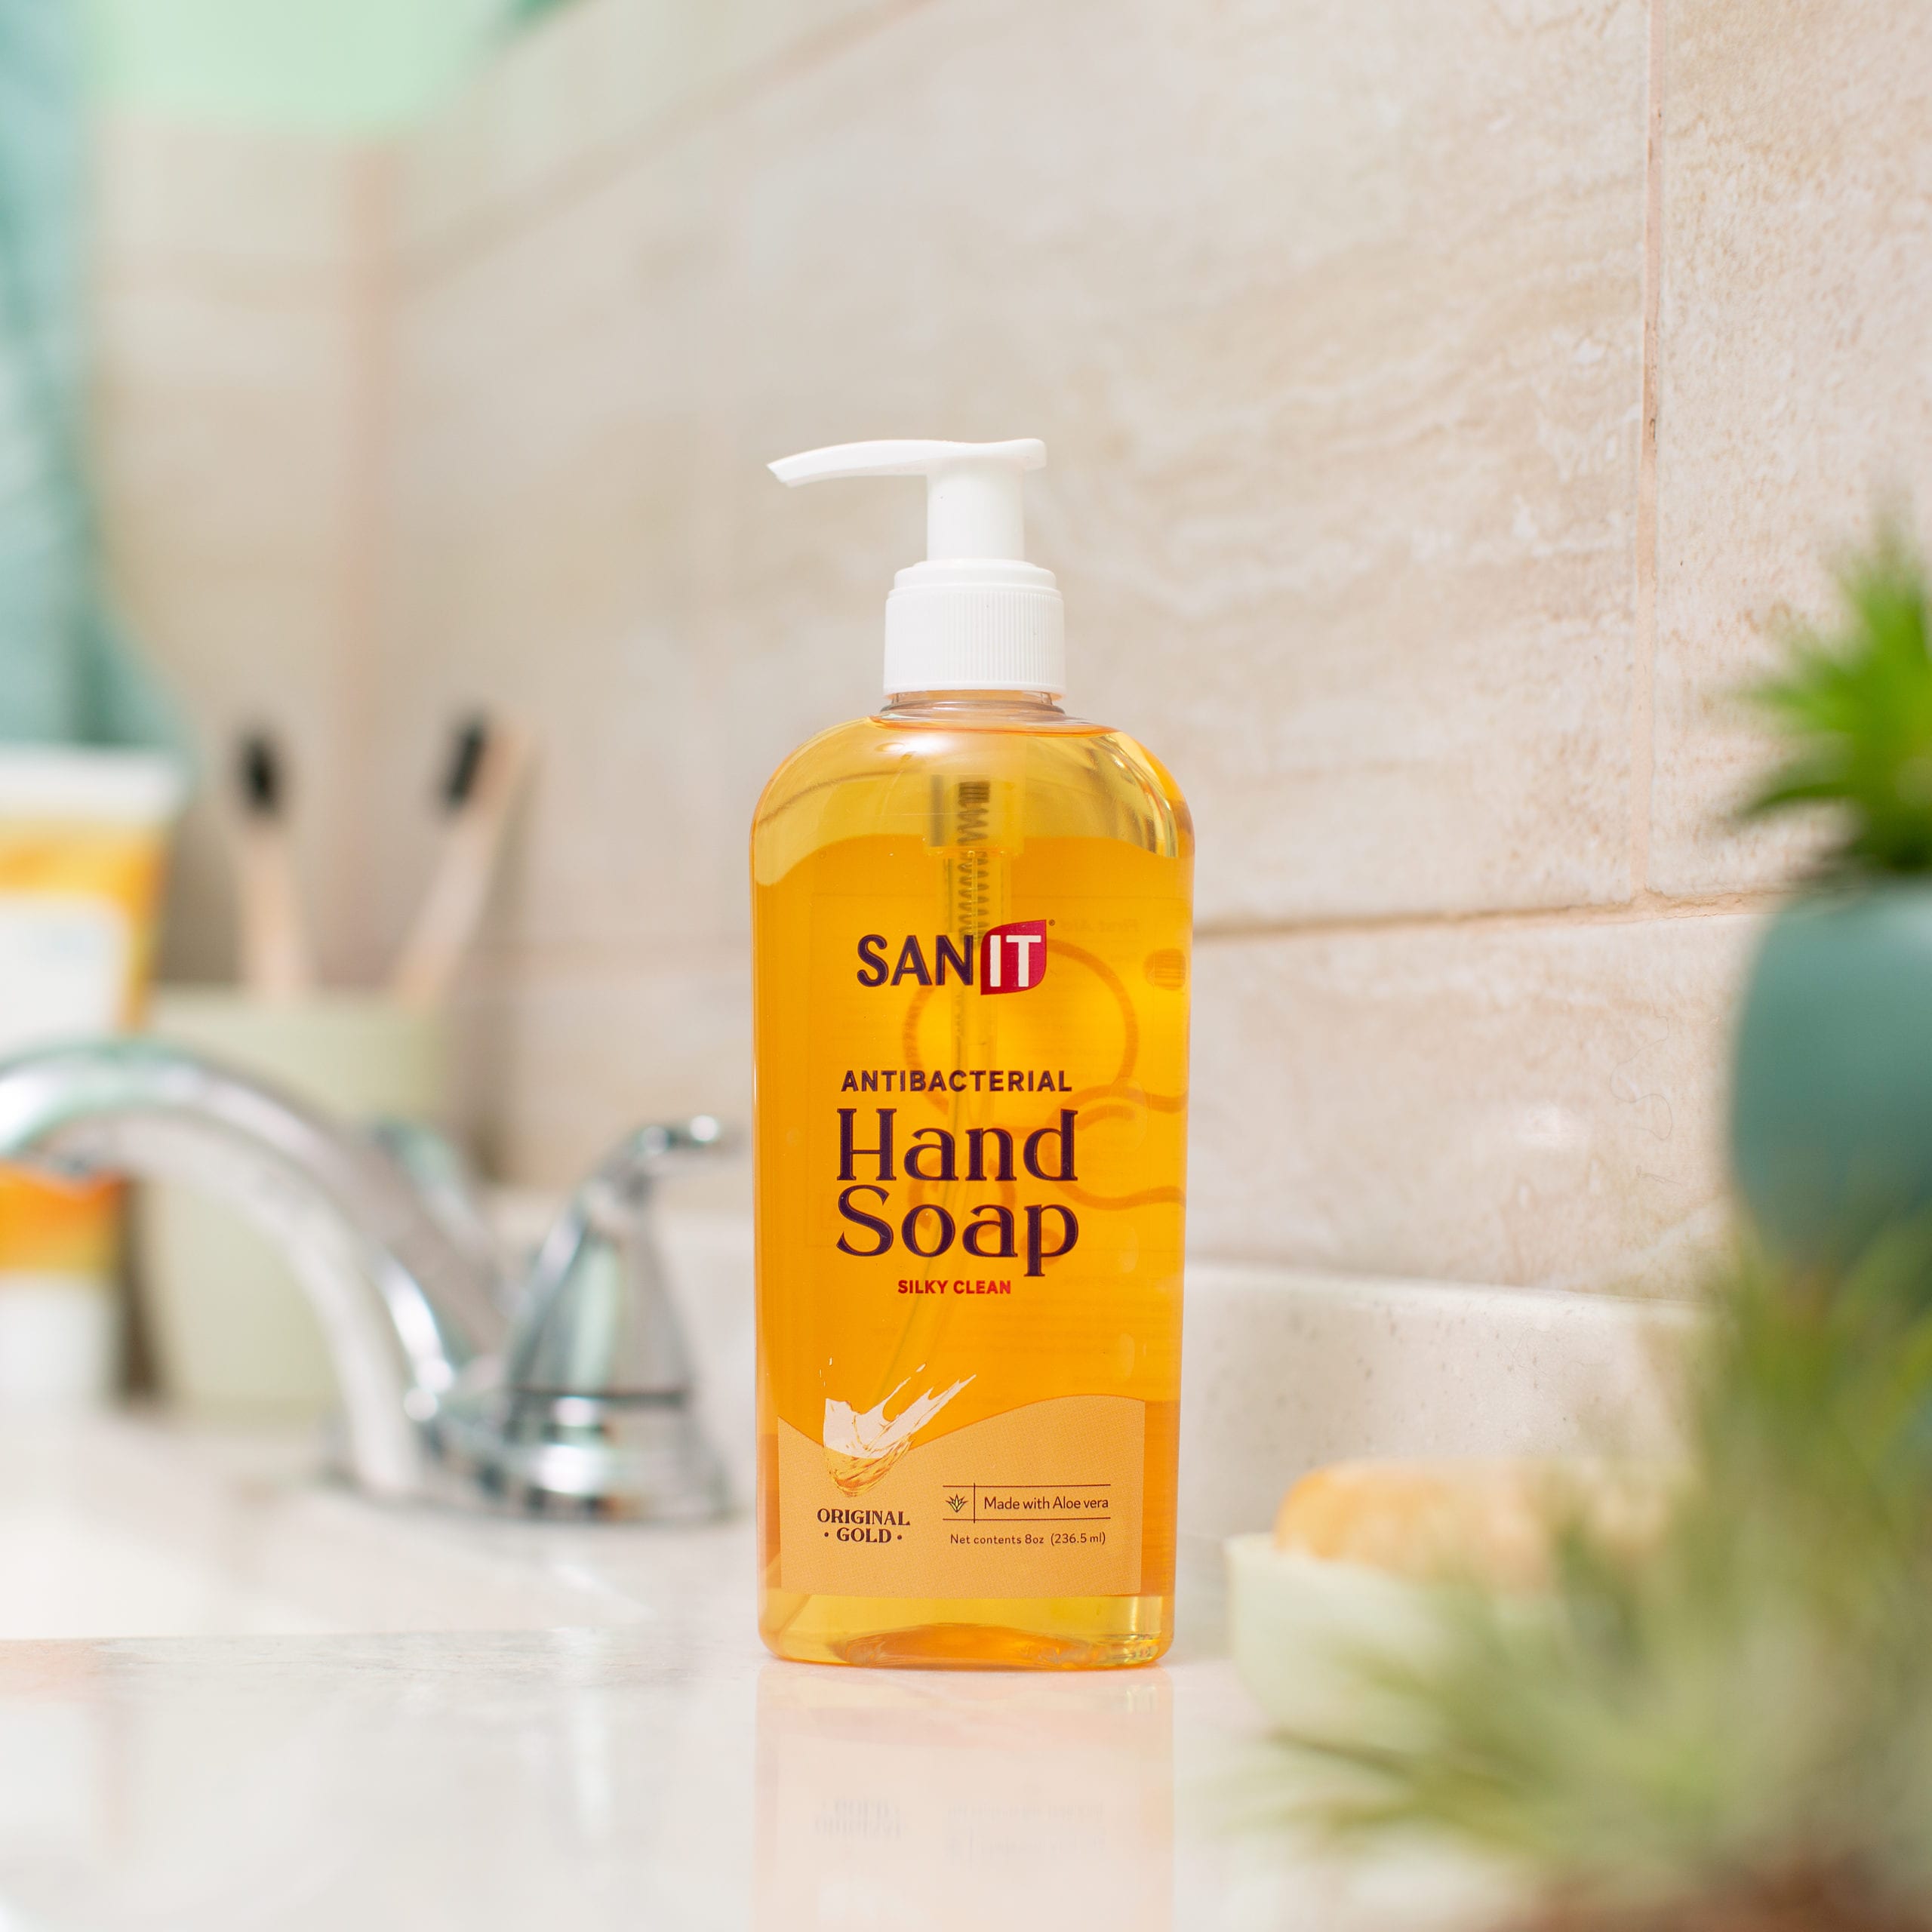 Sanit 8oz original gold antibacterial hand soap